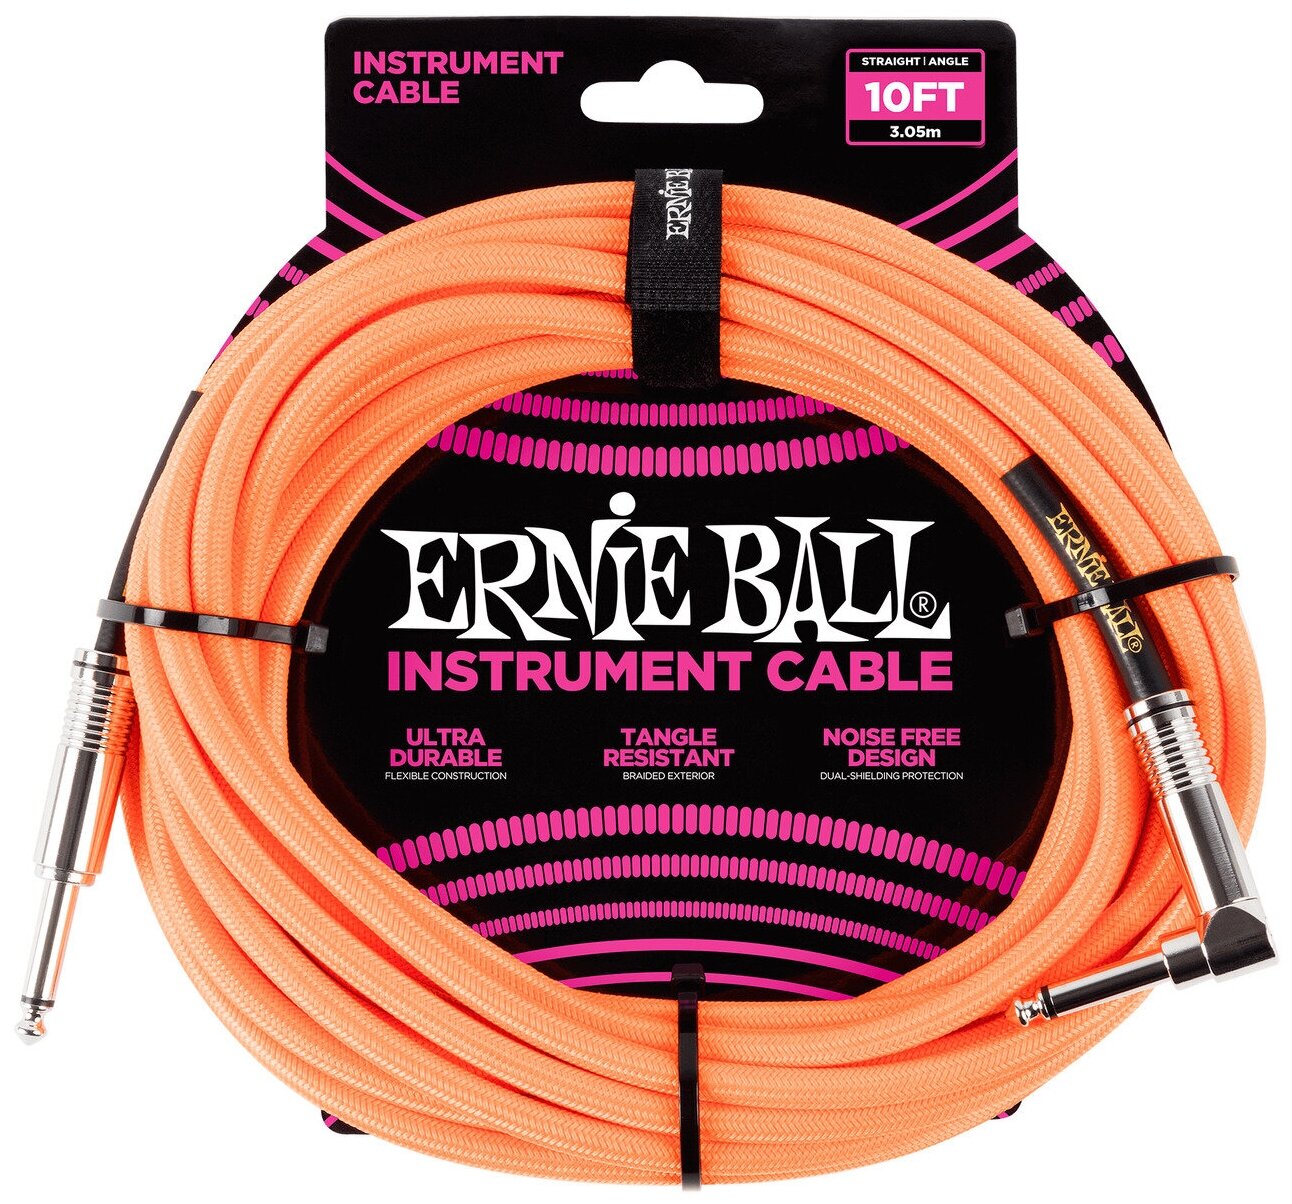 Ernie Ball 6079 кабель инструментальный оплетёный 305 м прямой/угловой джеки оранжевый неон